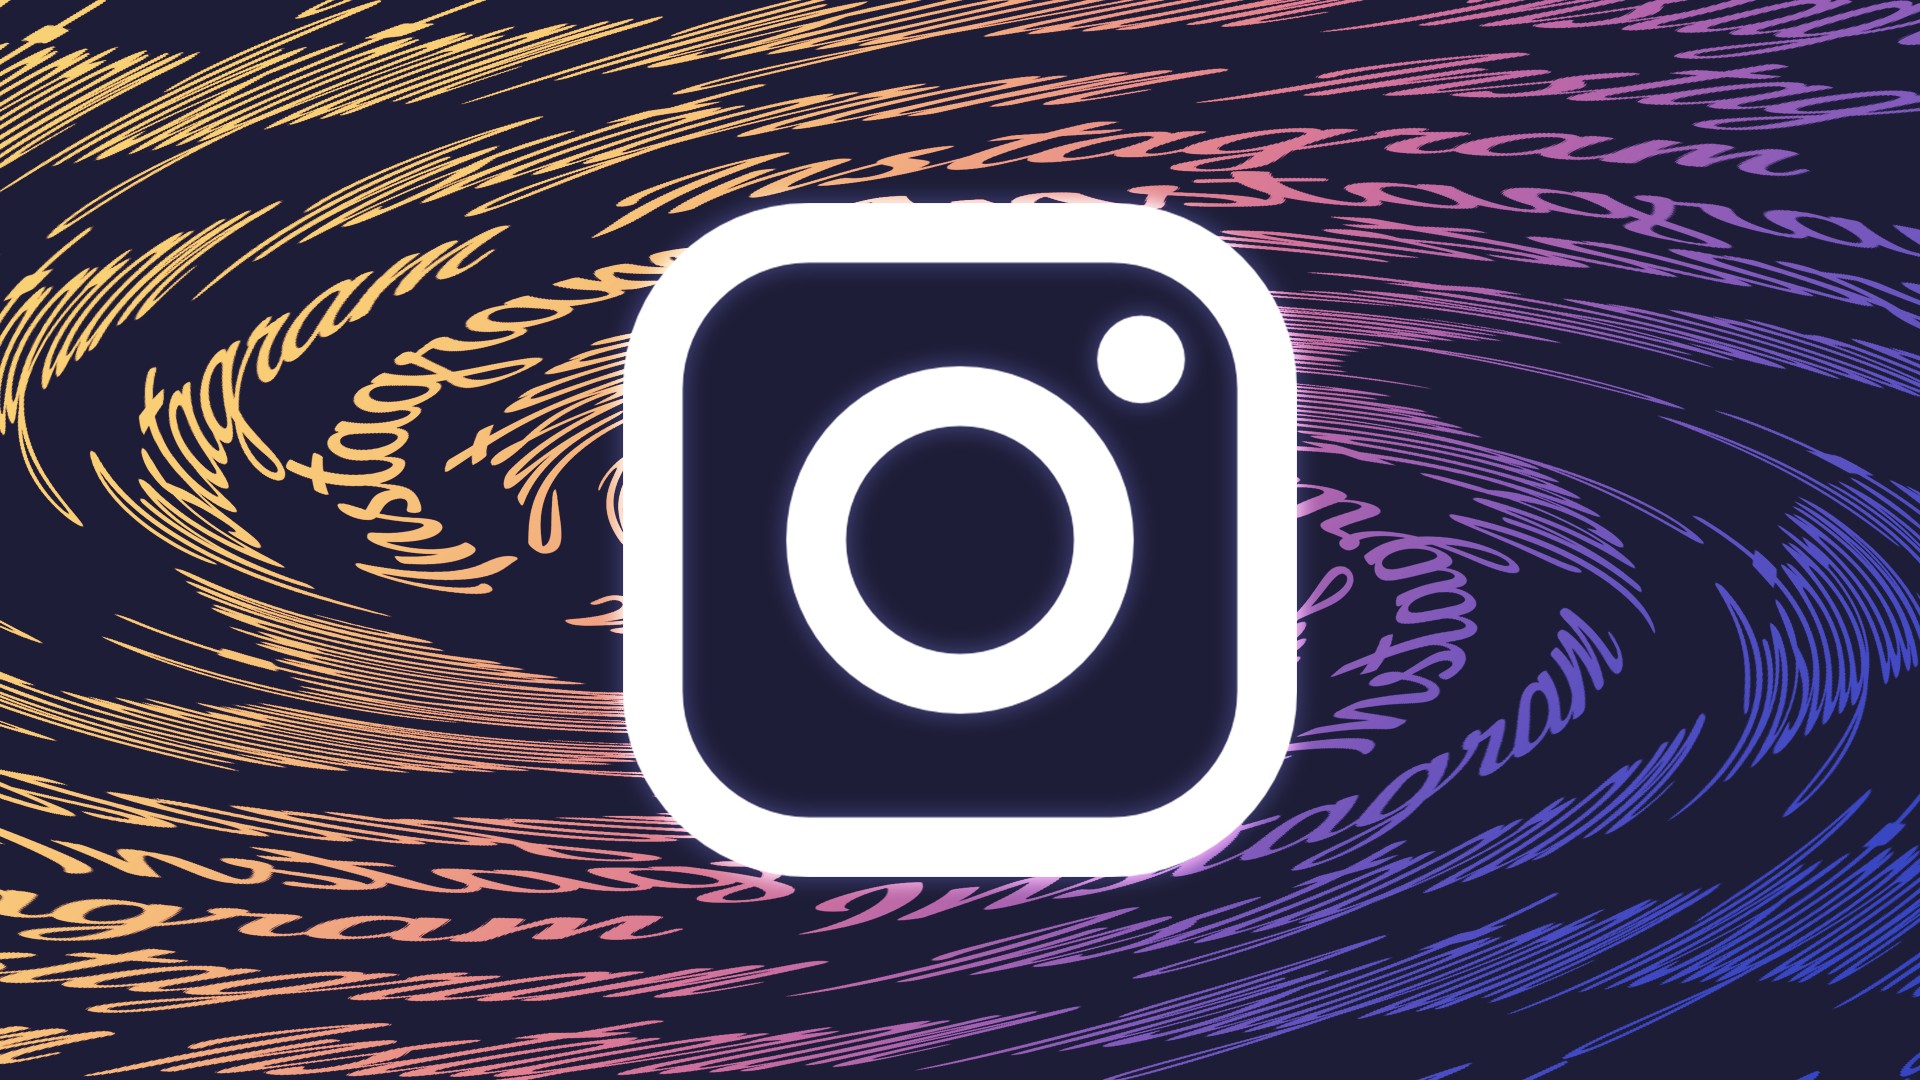 Instagram libera GIFs em comentários